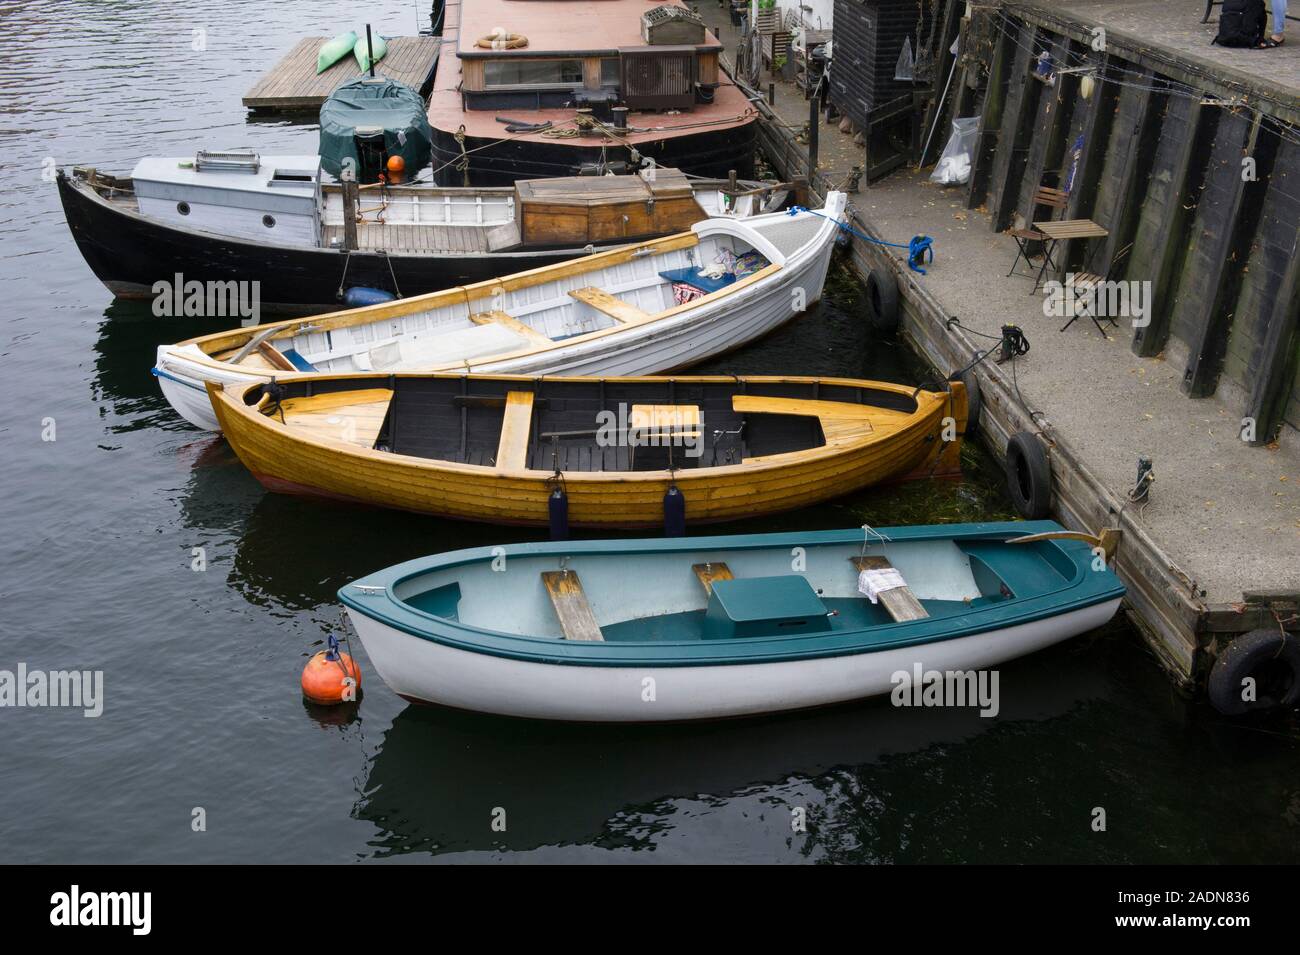 Kleine Boote auf dem Kanal in Kopenhagen, Dänemark. Stockfoto